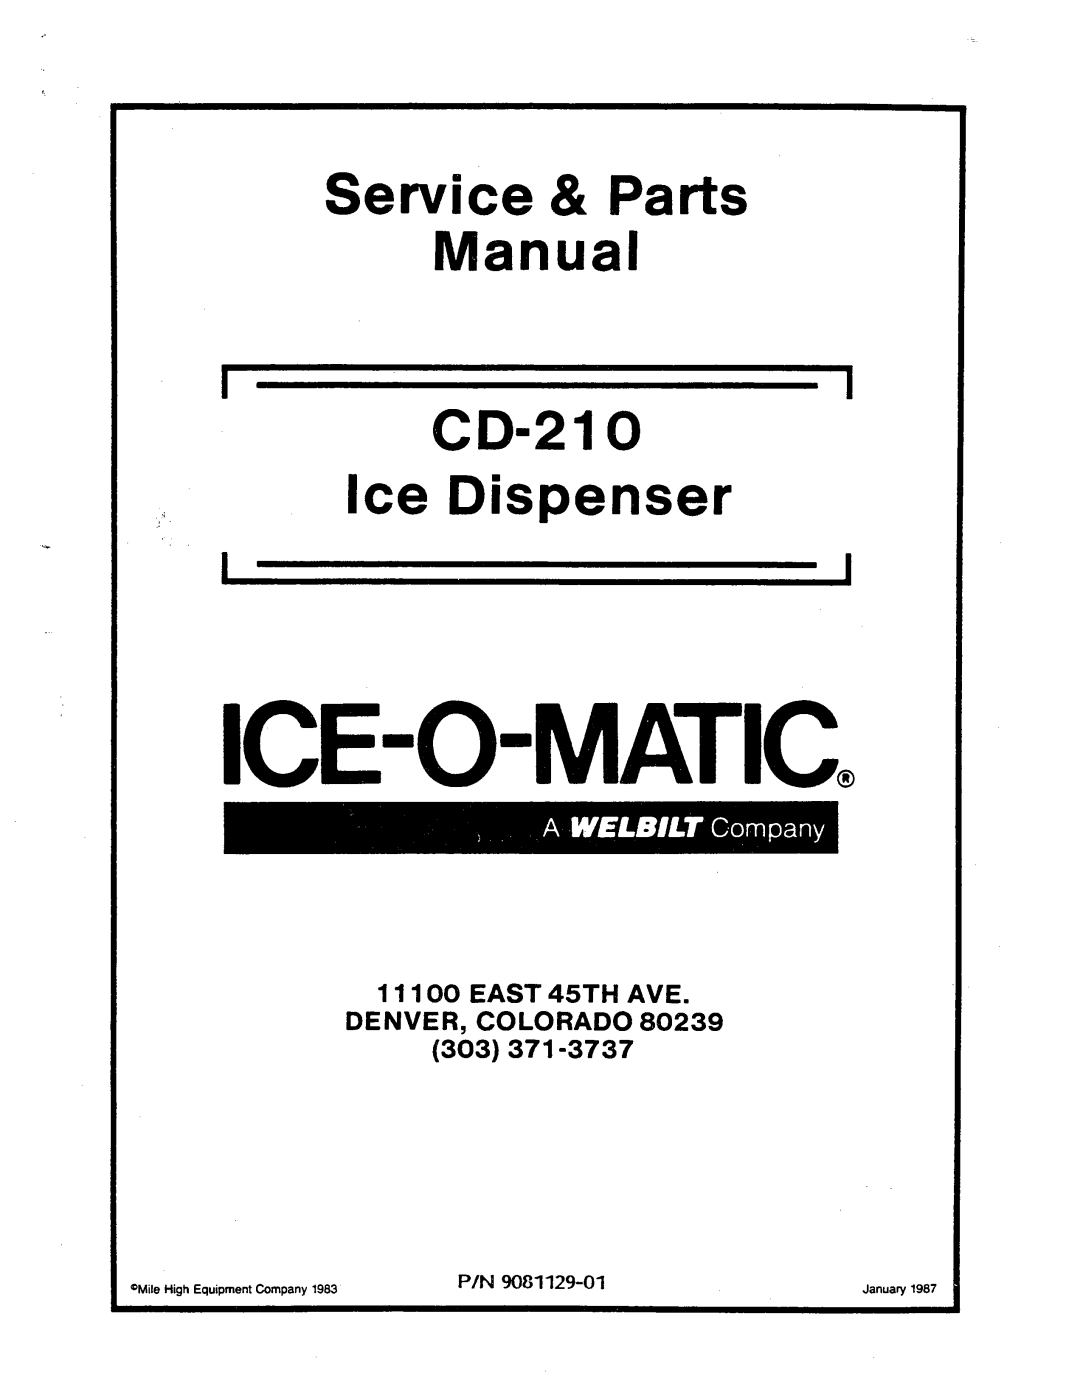 Ice-O-Matic CD210 manual 